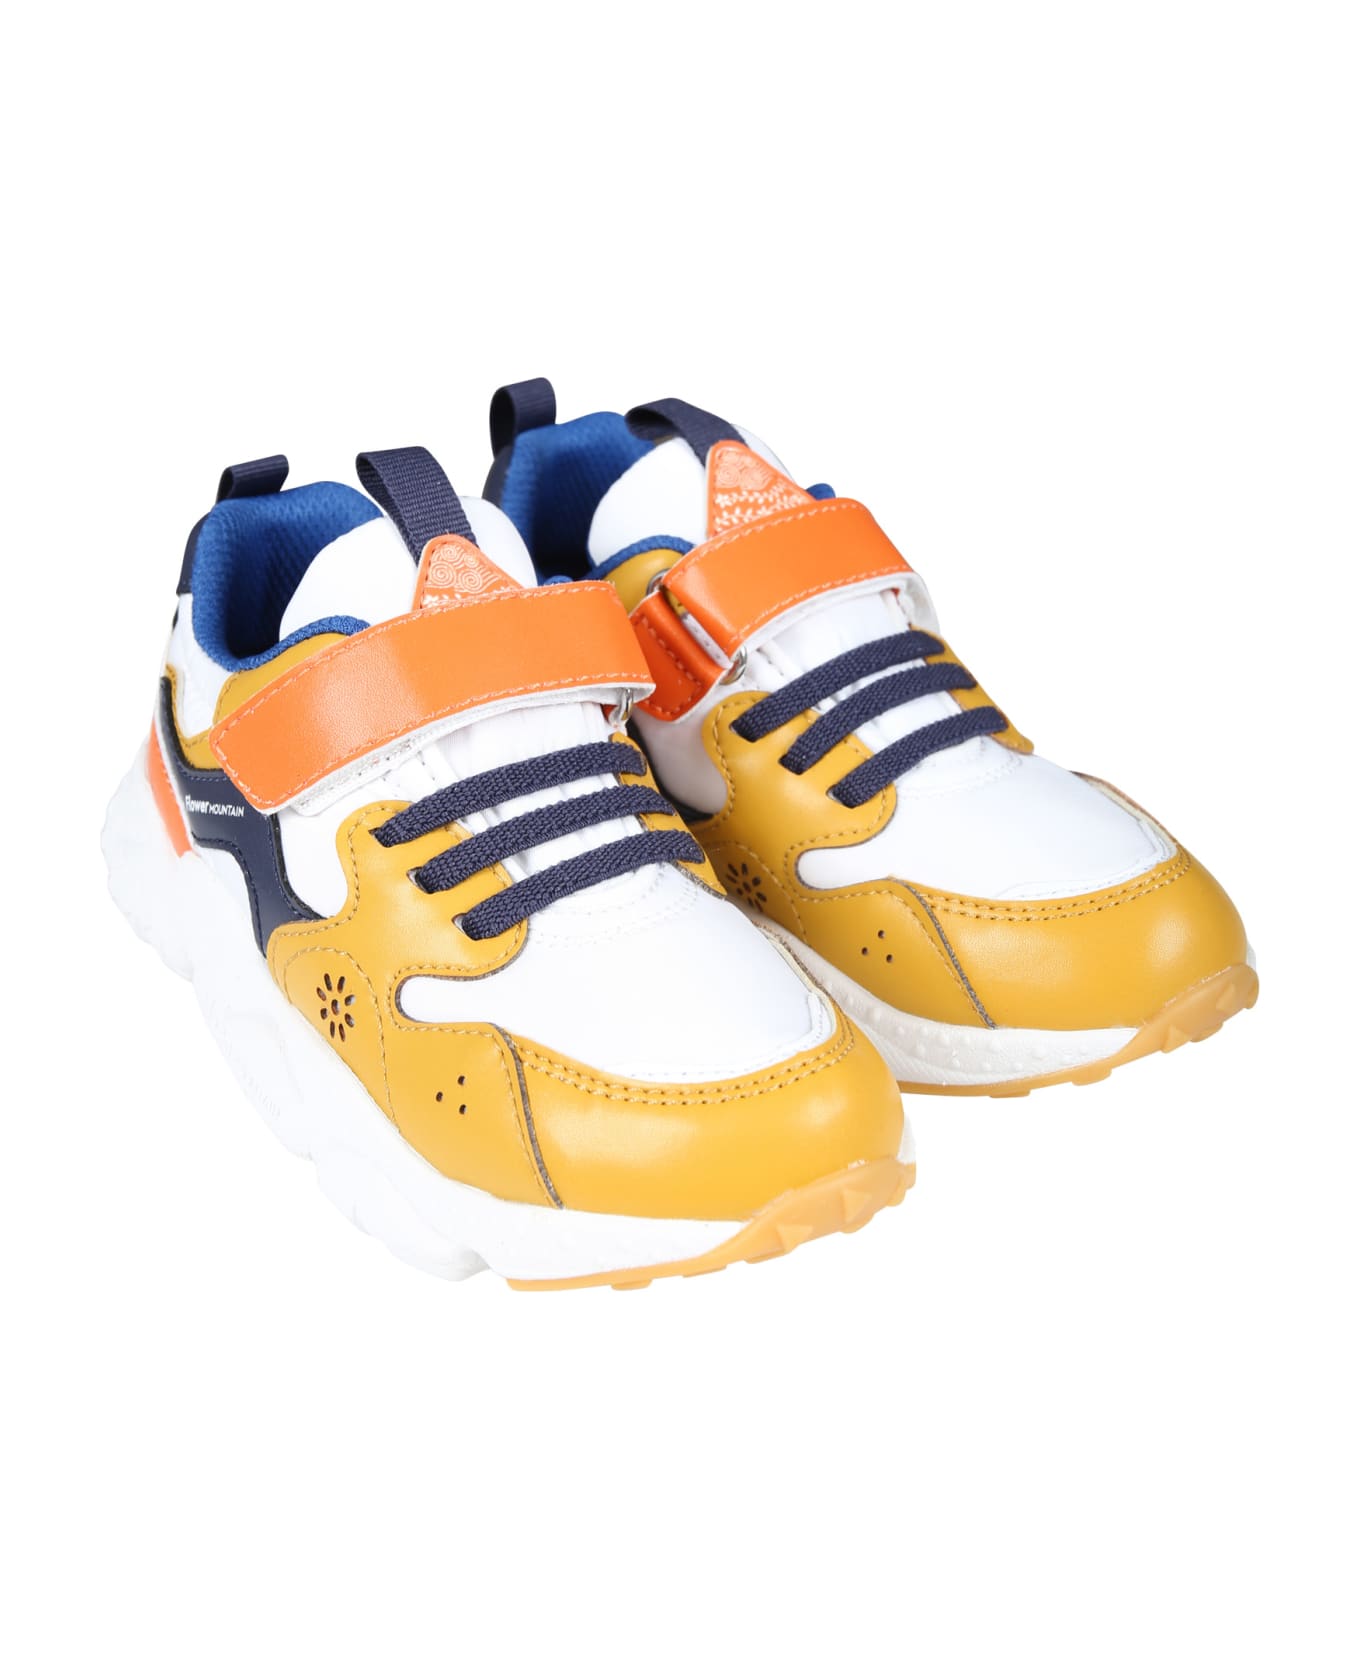 Flower Mountain Orange Yamano Low Sneakers For Boy - Orange シューズ